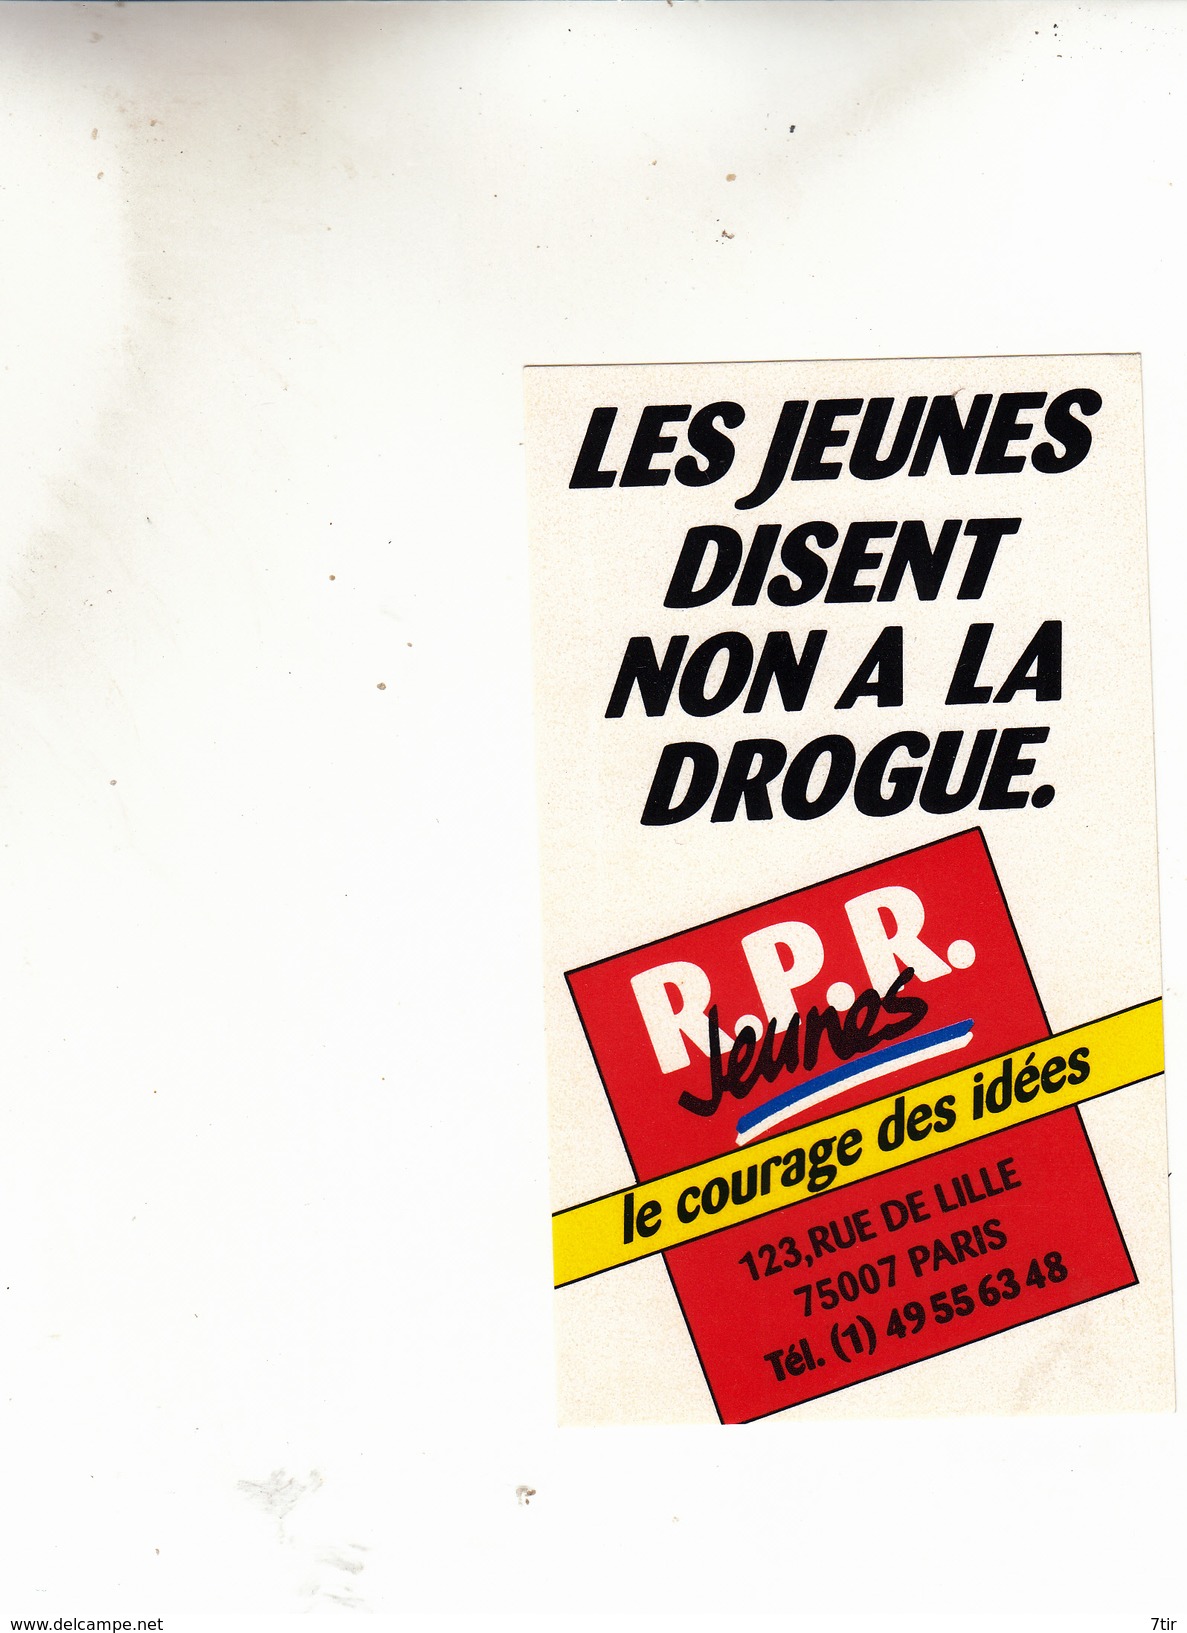 PARIS COURAGE DES IDEES RPR JEUNES AUTOCOLANT - Stickers